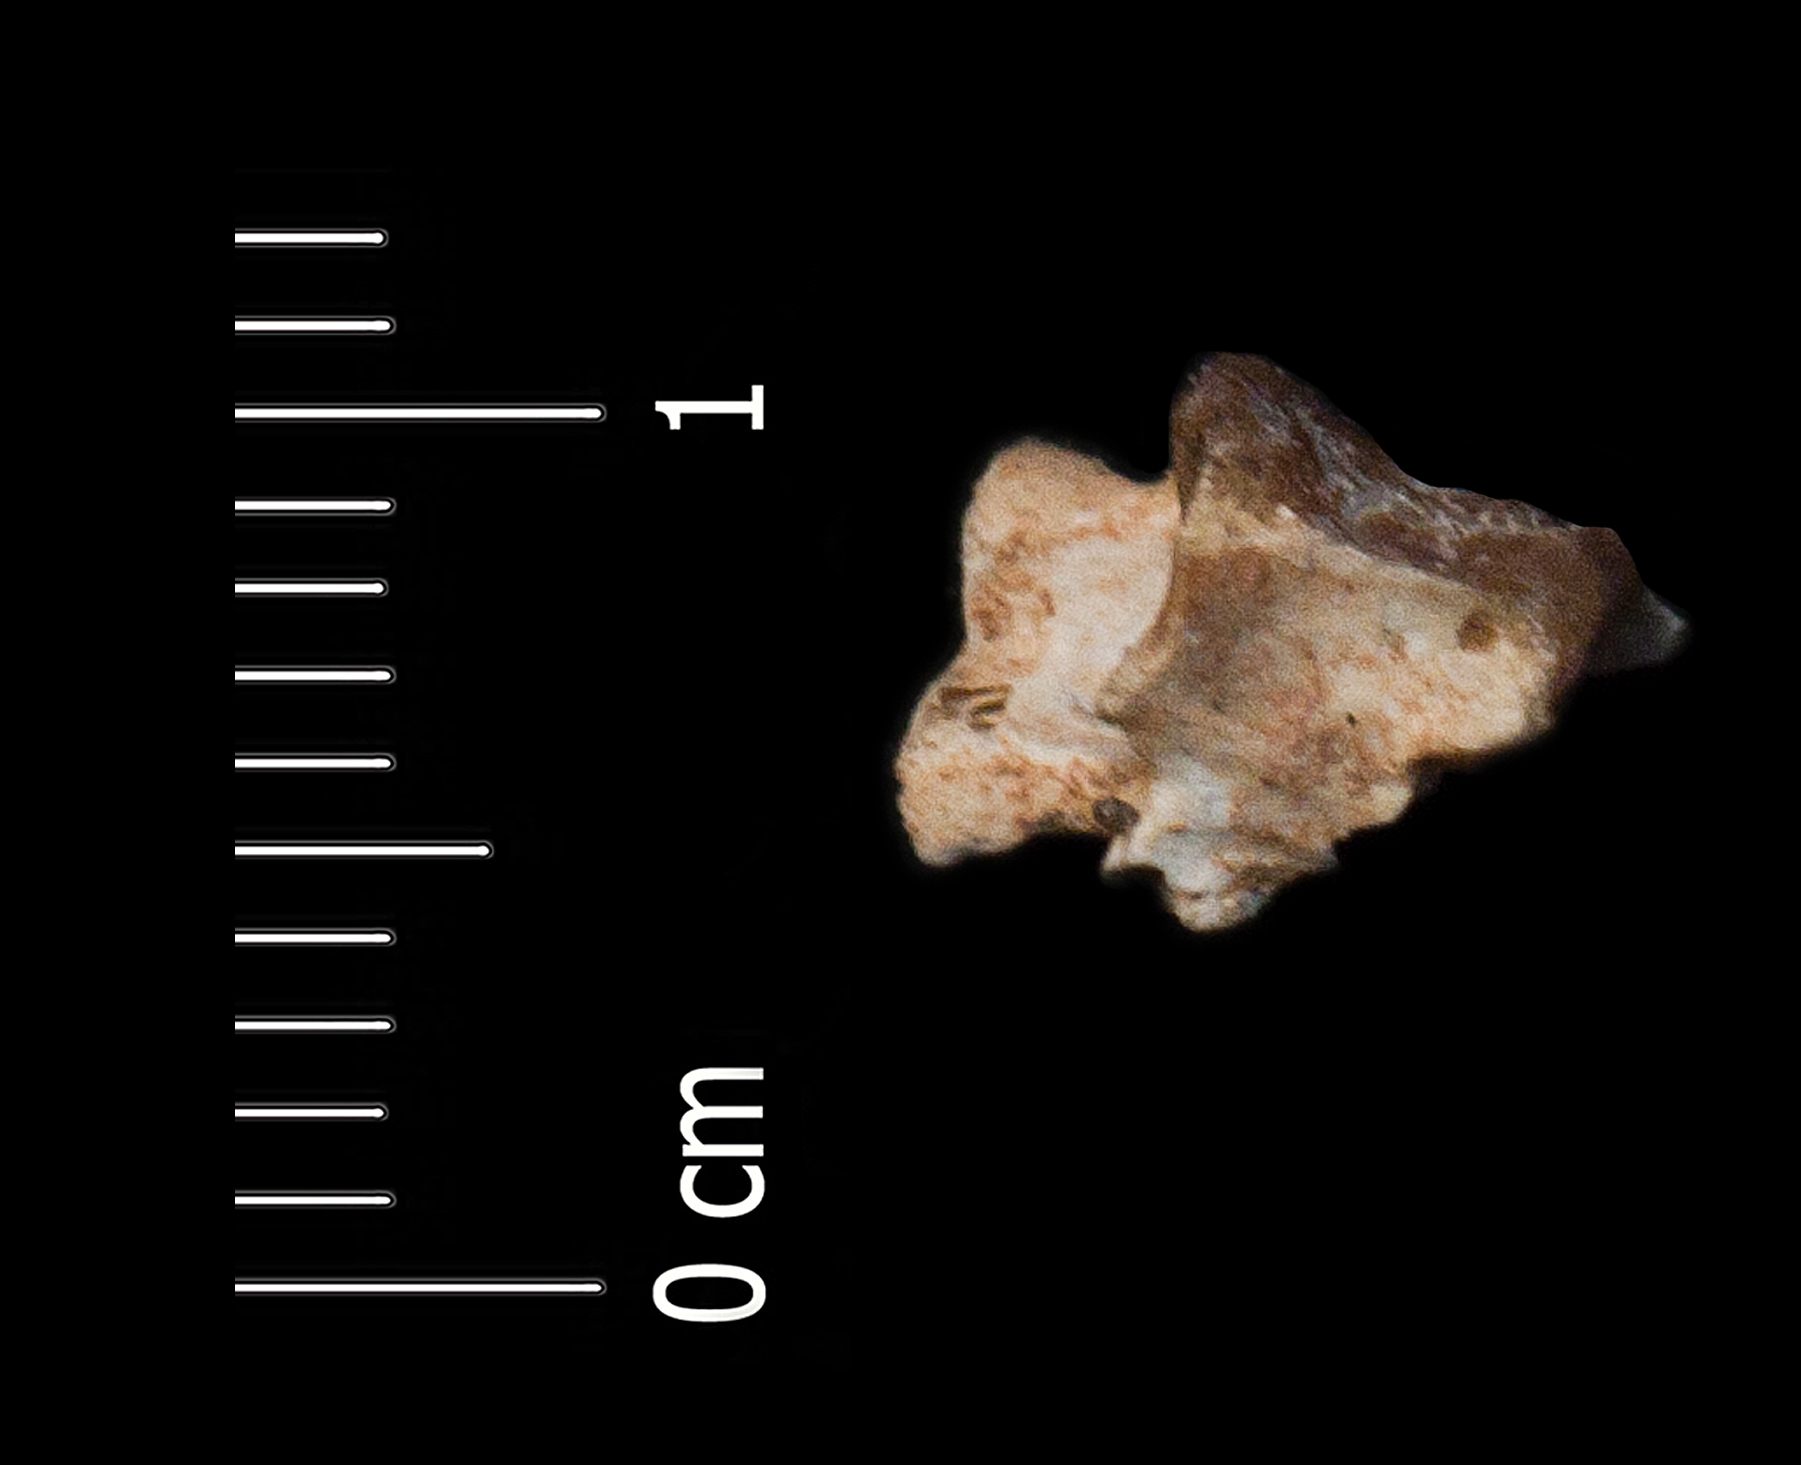 Fossile (vertebra, esemplare)